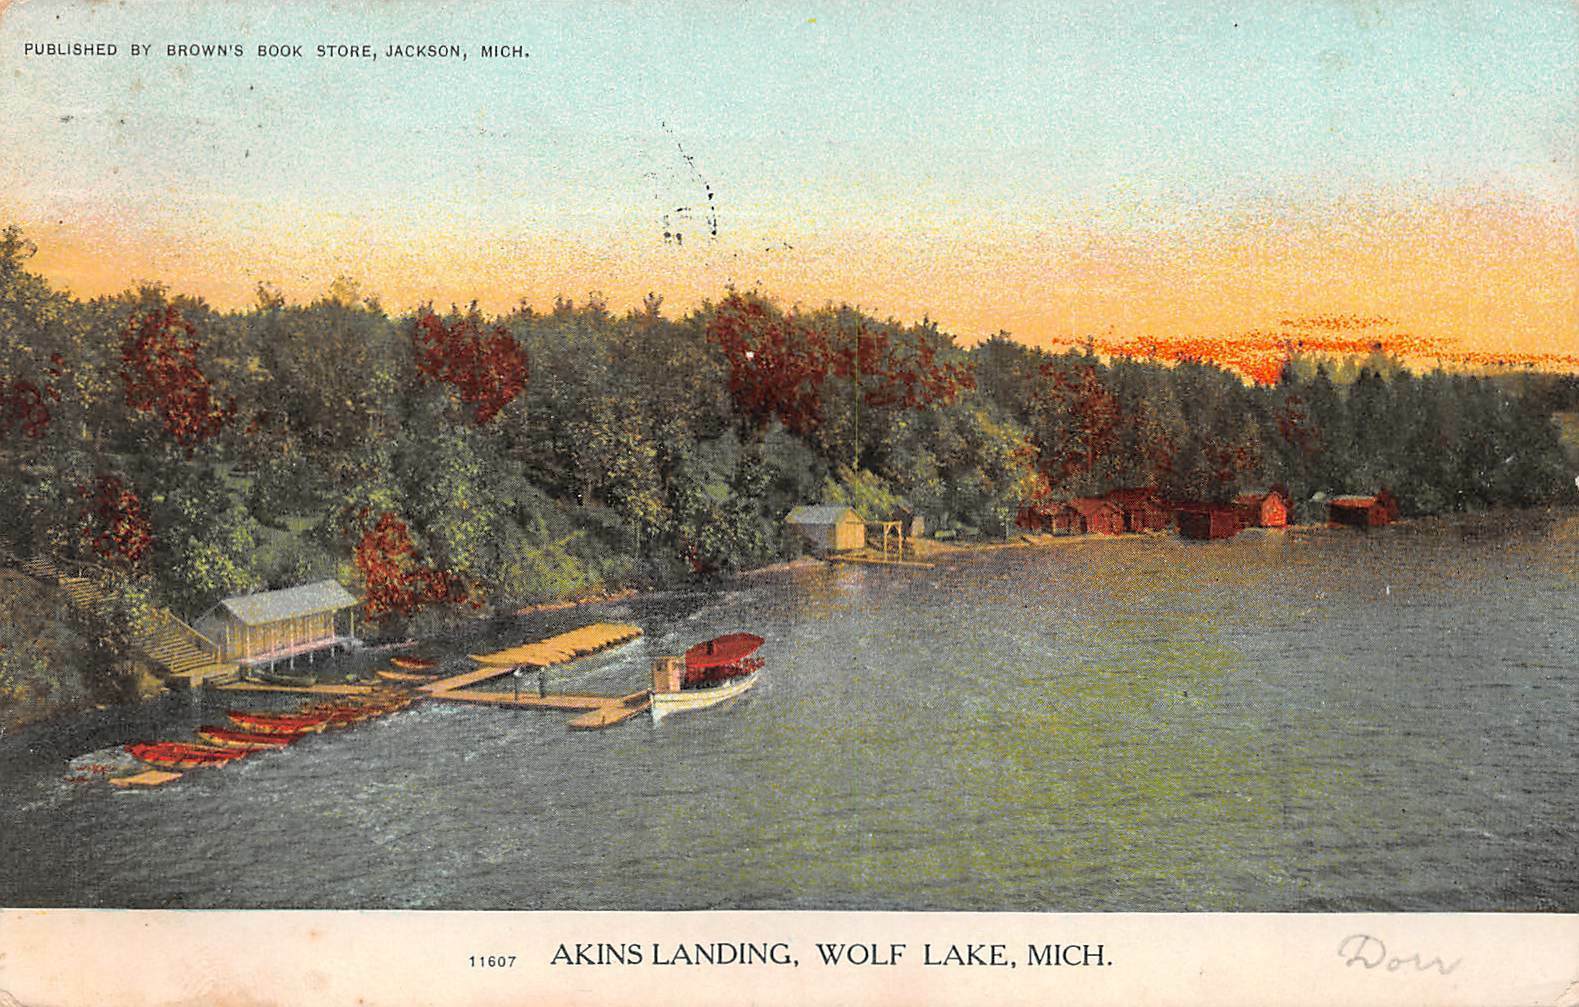 LPS88 Wolf Lake Michigan Akins Landing Postcard | United States ...